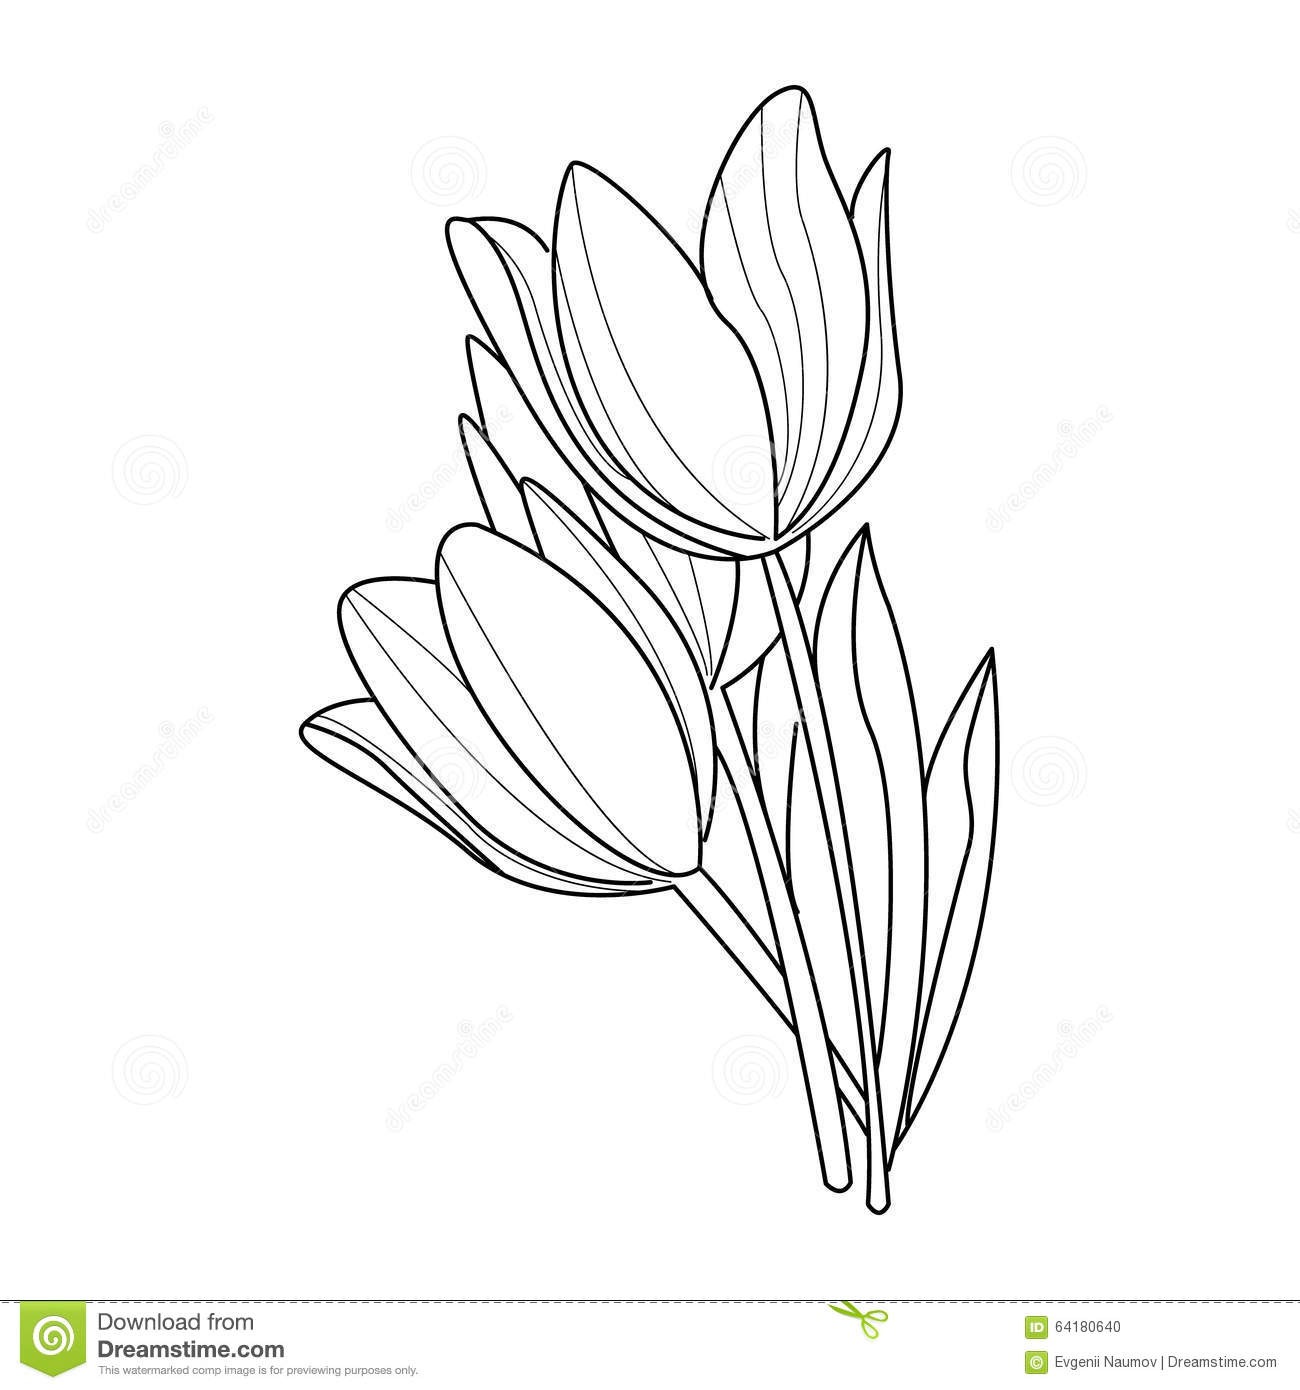 Lotus Flower Drawing Sketch at GetDrawings | Free download